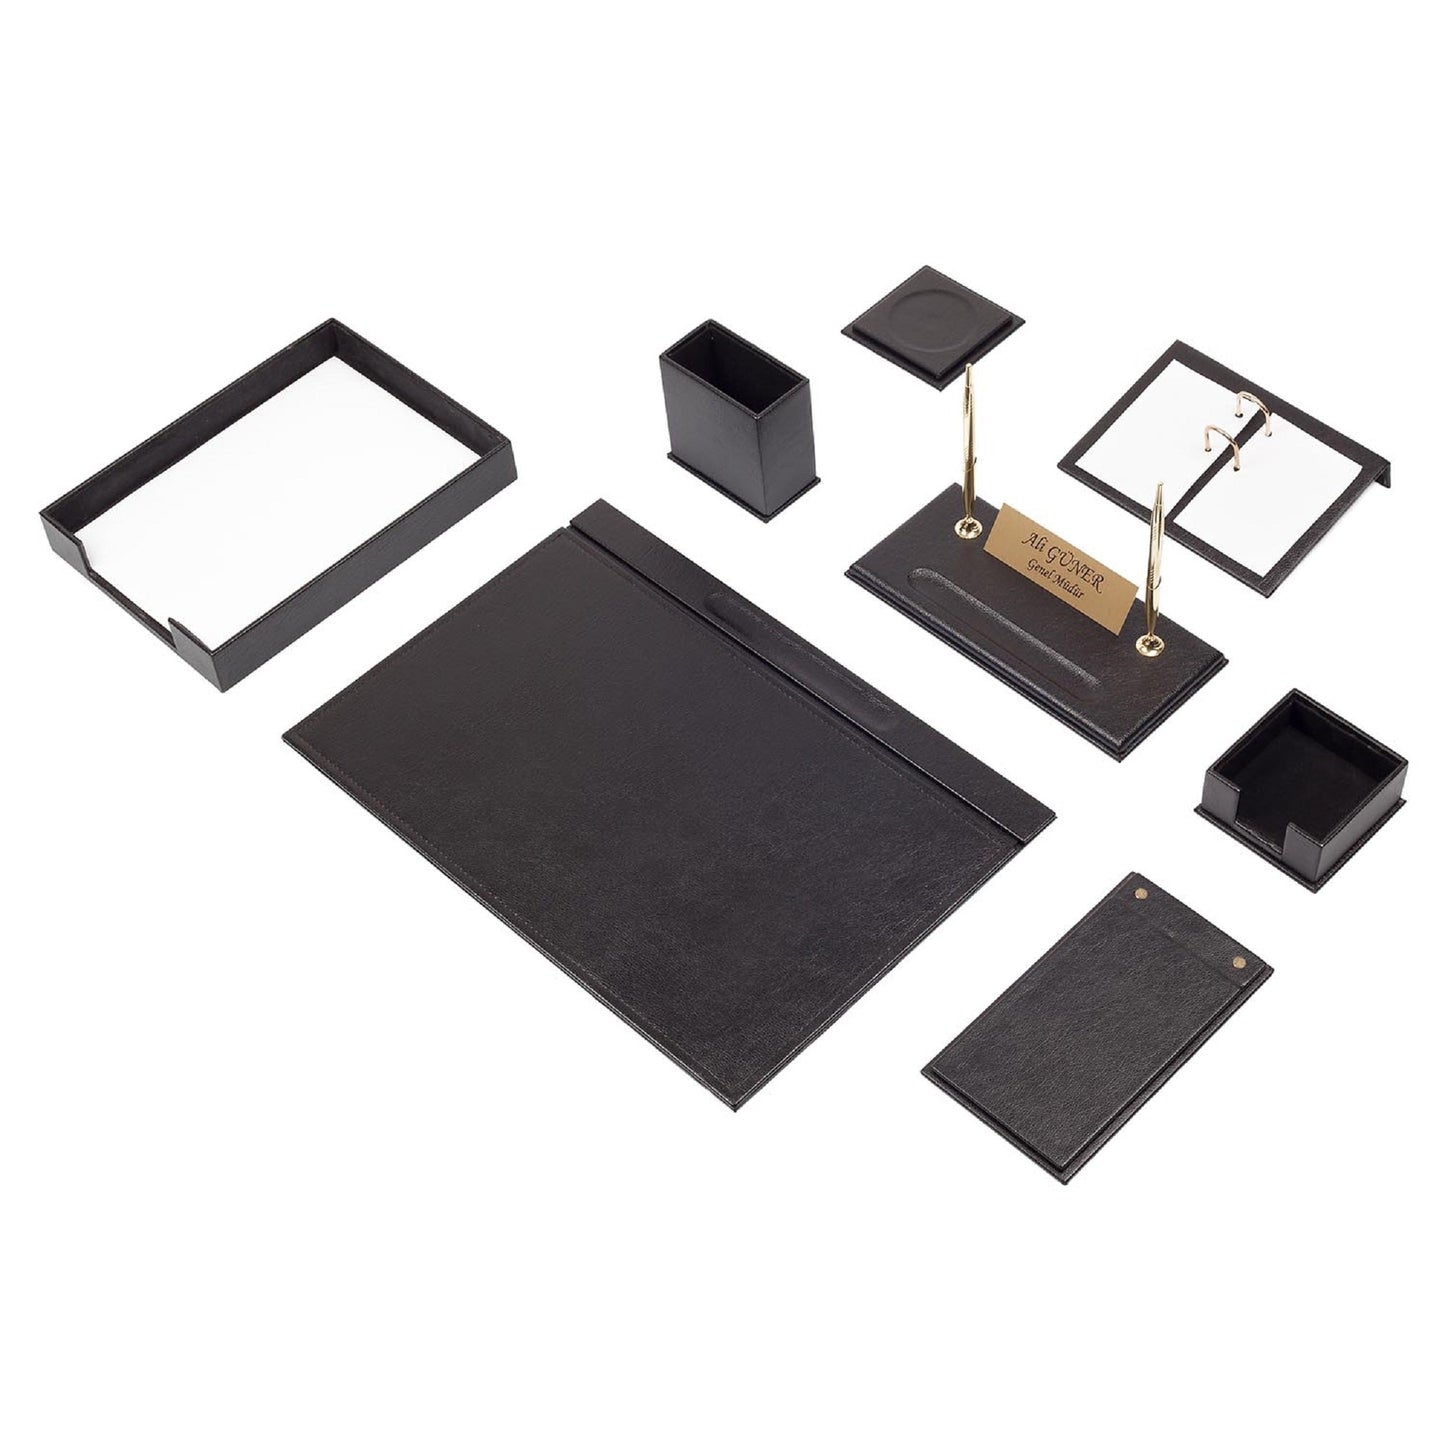 MOOG  Leather Desk Set-10 Accessories-Desk Organizer-Desk Office Accessories-Office Organizer- Single Document Tray  -10 PCS